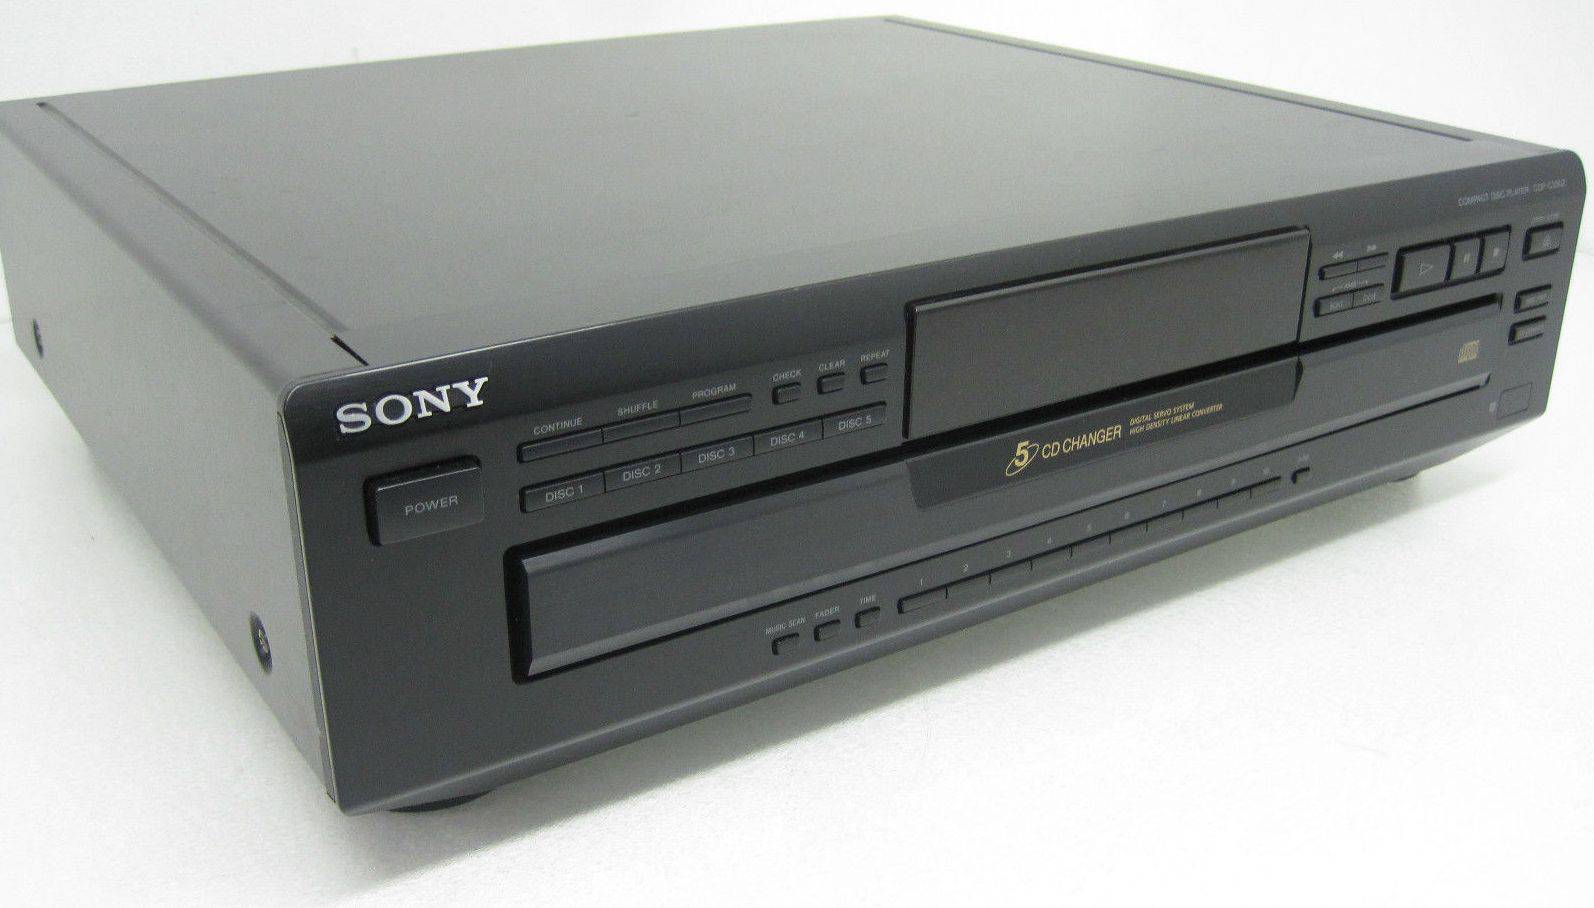 Sony CDP-C350Z